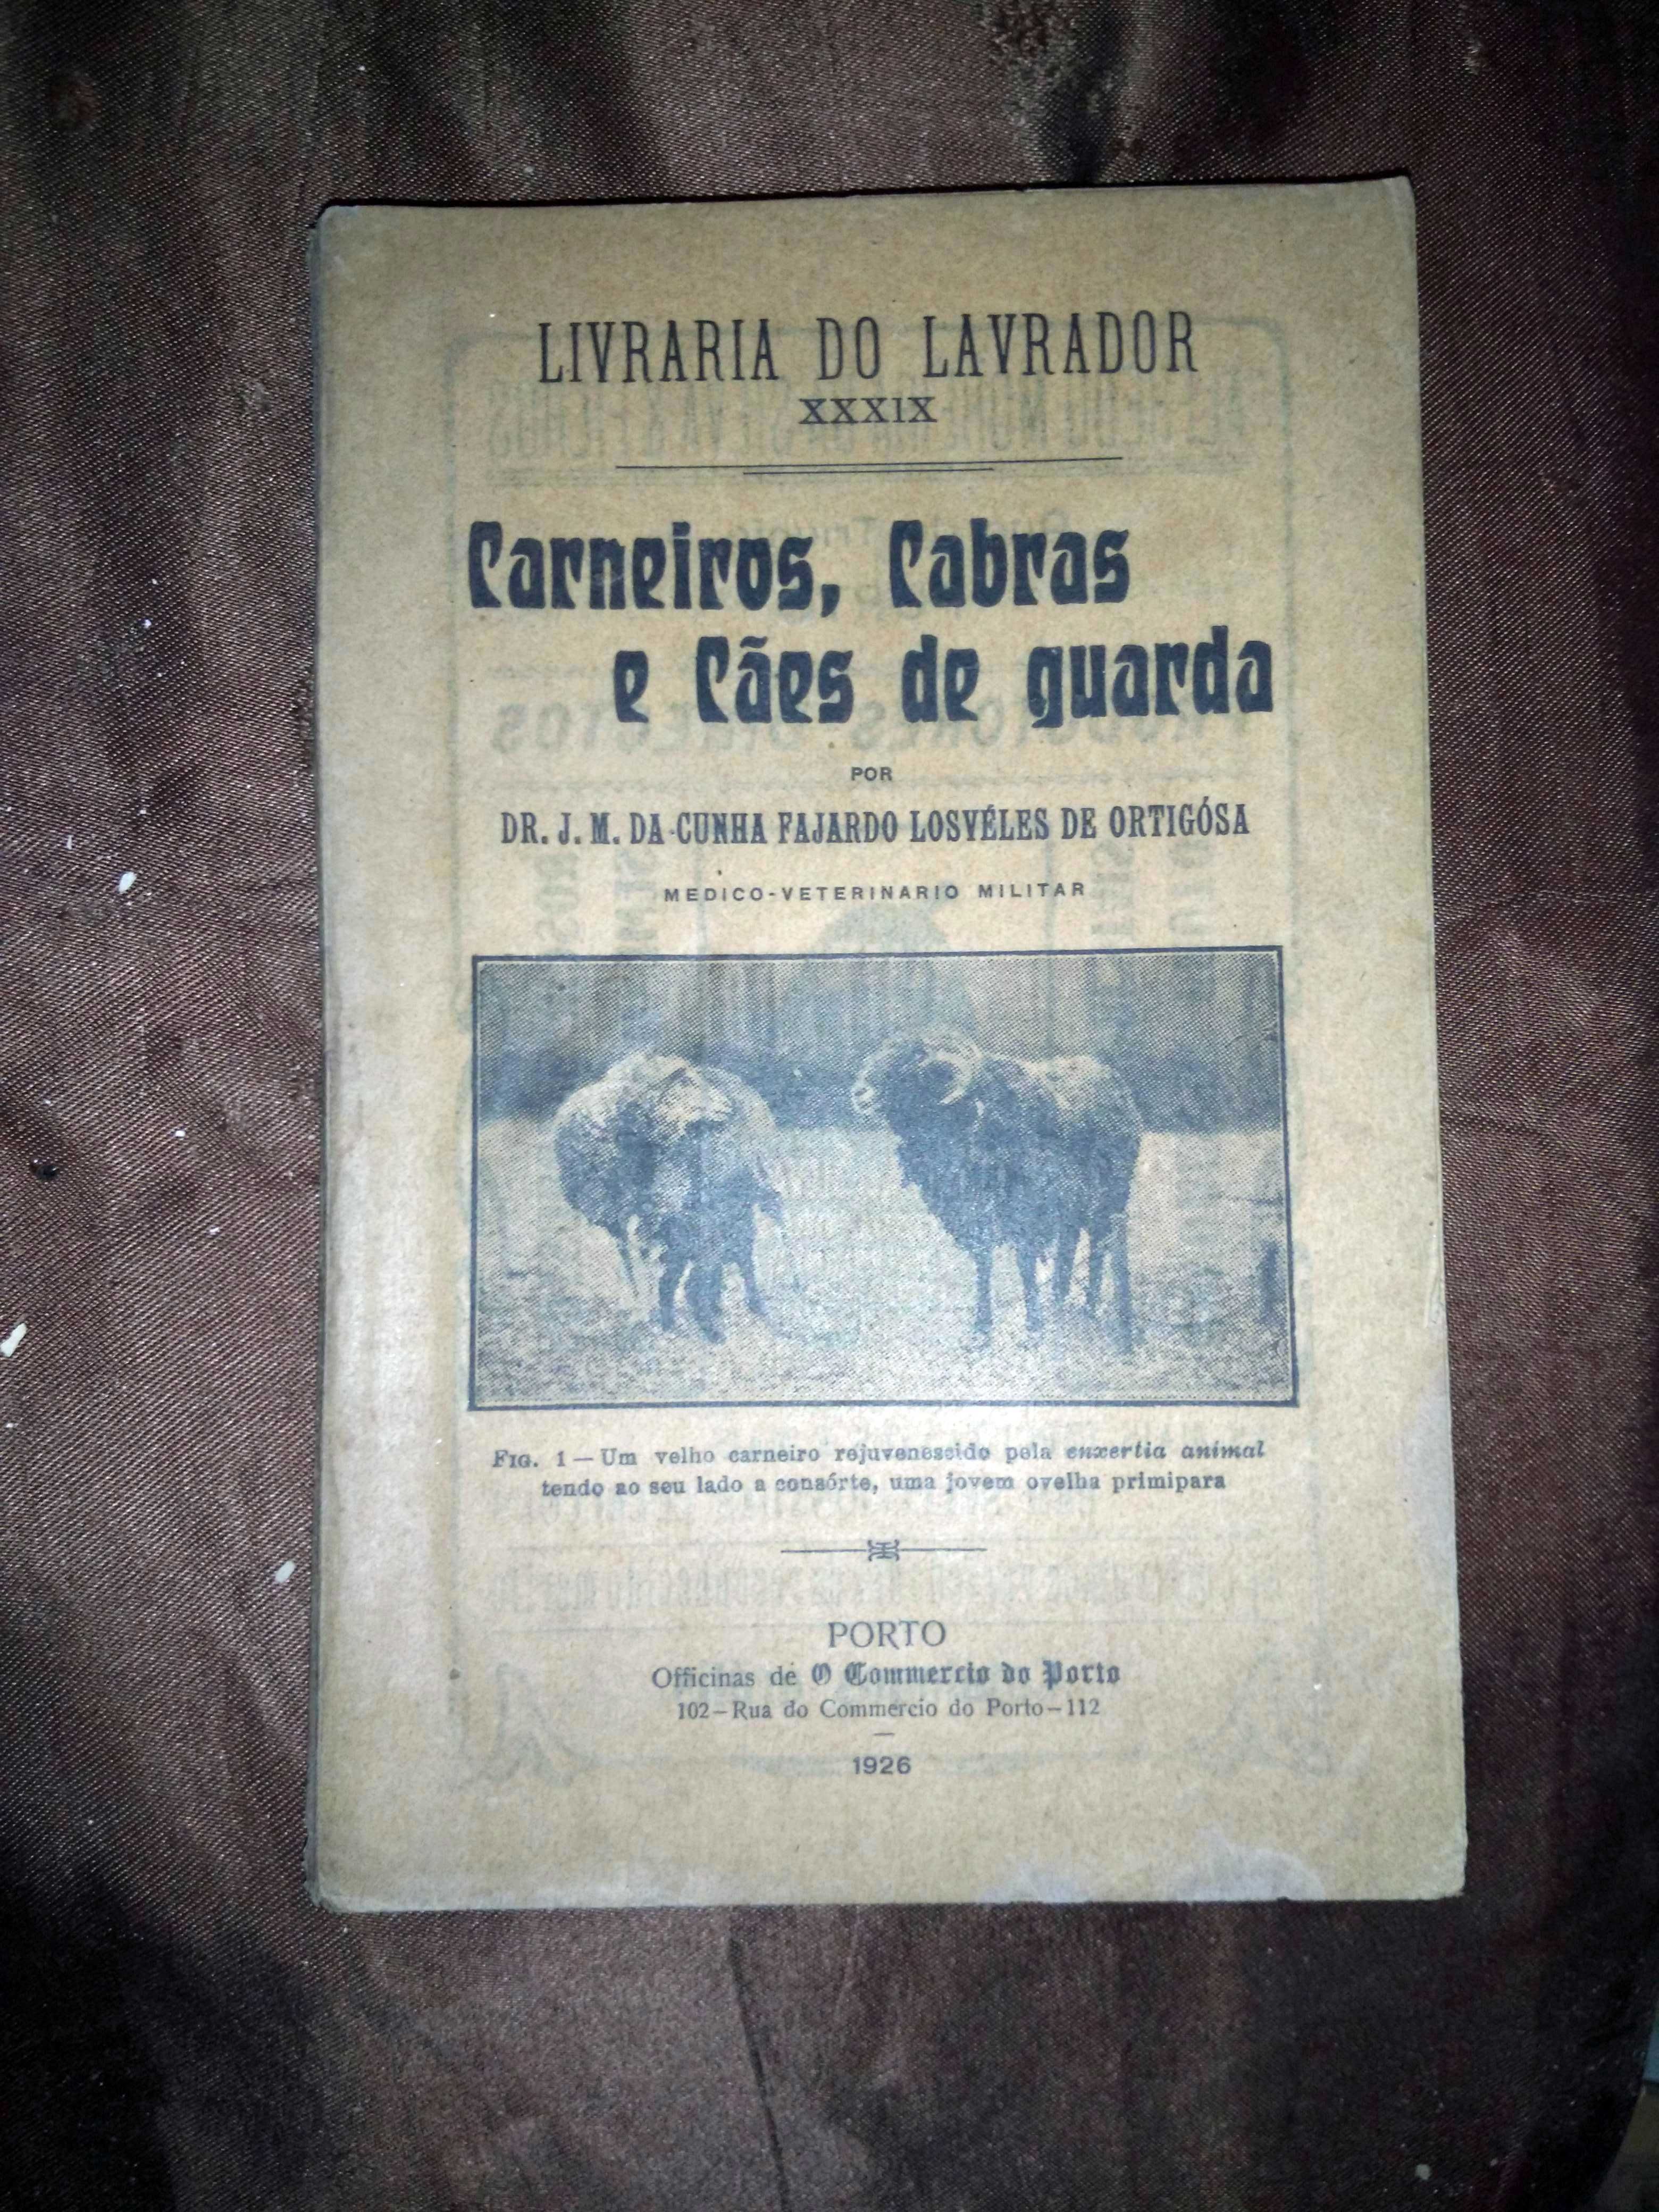 Carneiros, Cabras e Cães de Guarda - Livraria do Lavrador